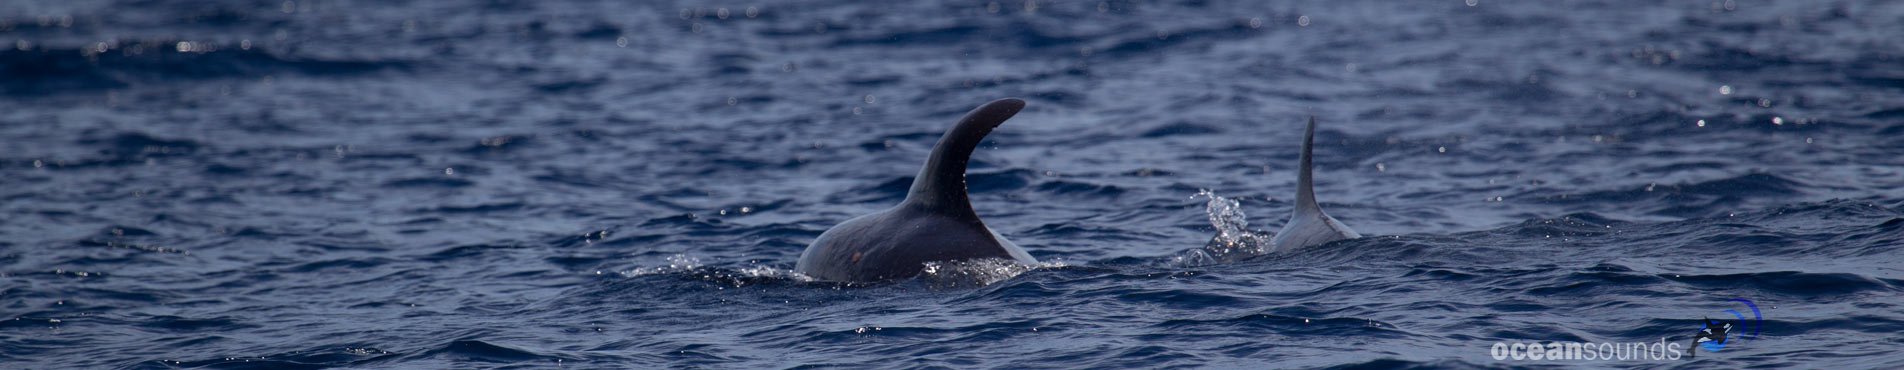 Pygmy sperm whale kogia breviceps